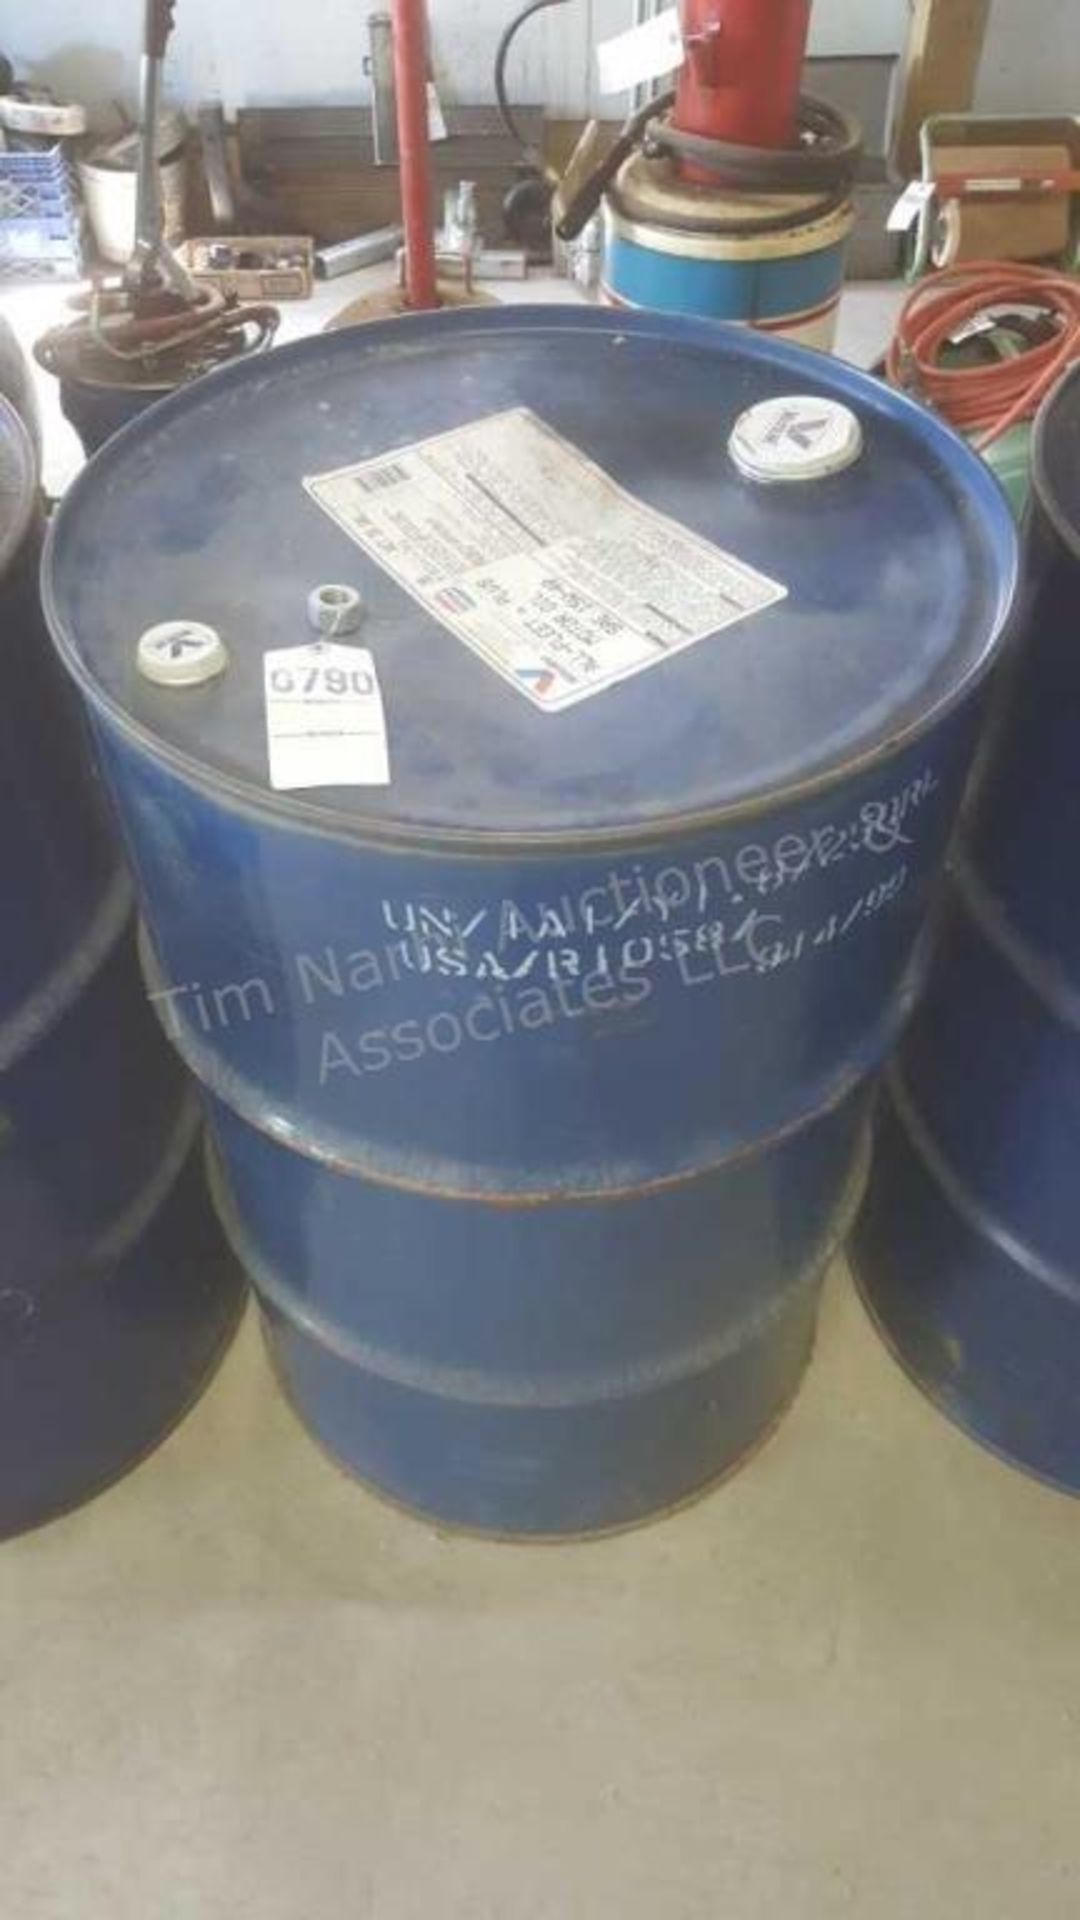 Full 55 gallon drum of valvoline SAE 15w-40